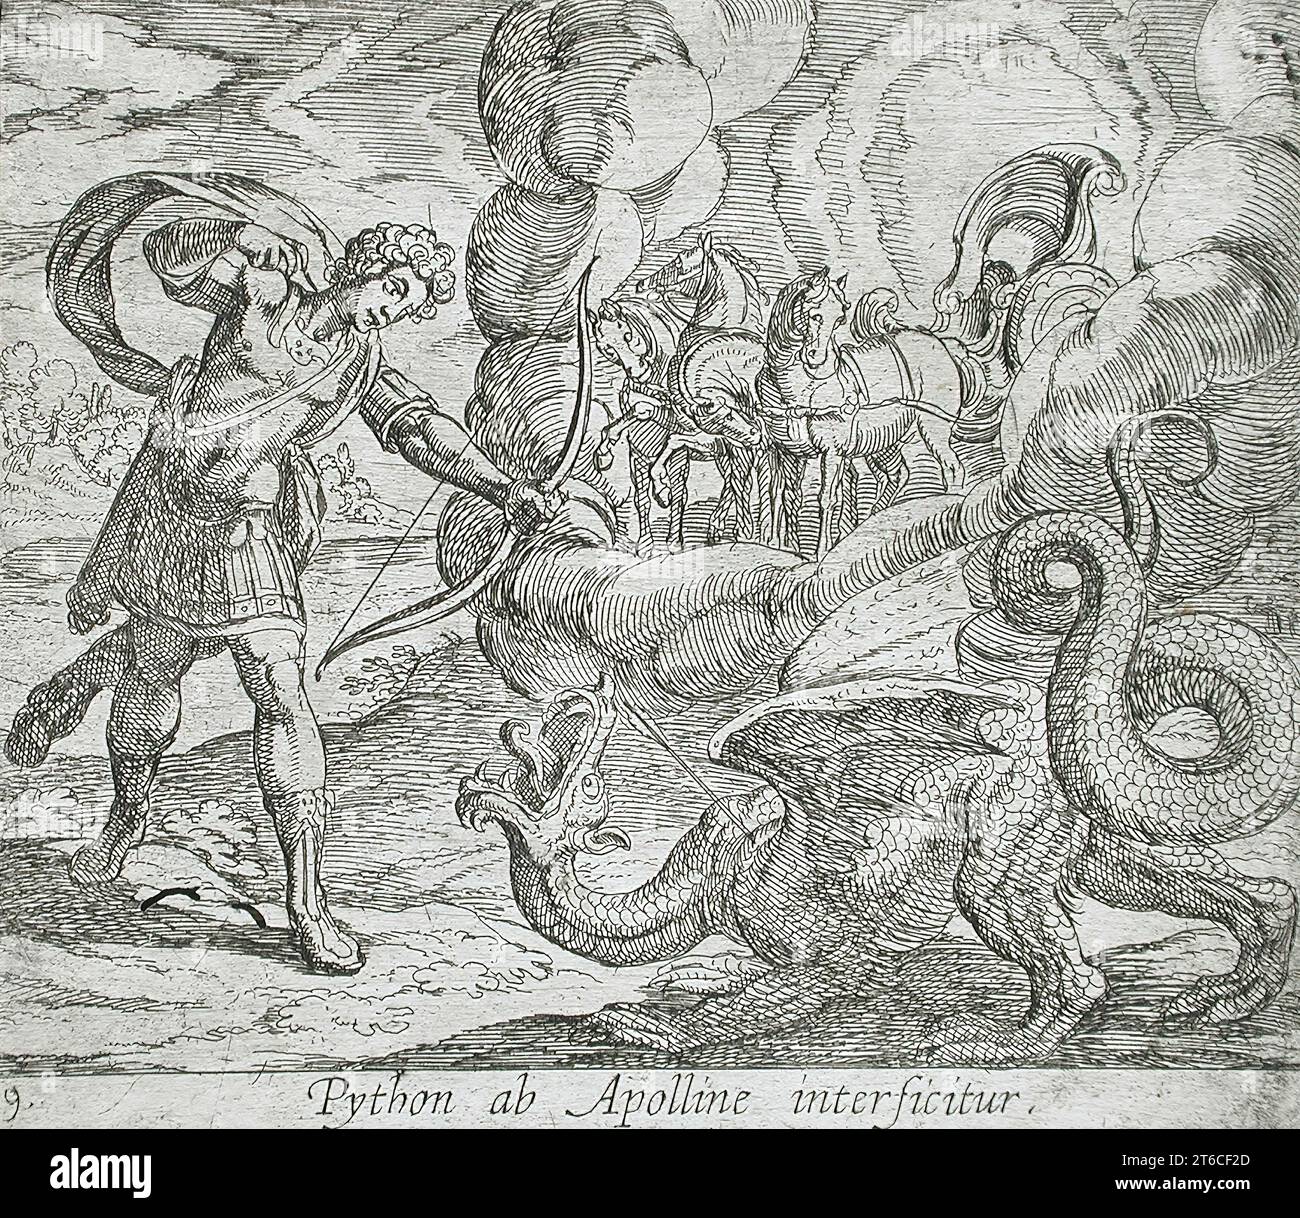 Apollo Killing Python, pubblicato nel 1606. Dalle Metamorfosi di Ovidio, PL. 9. Foto Stock